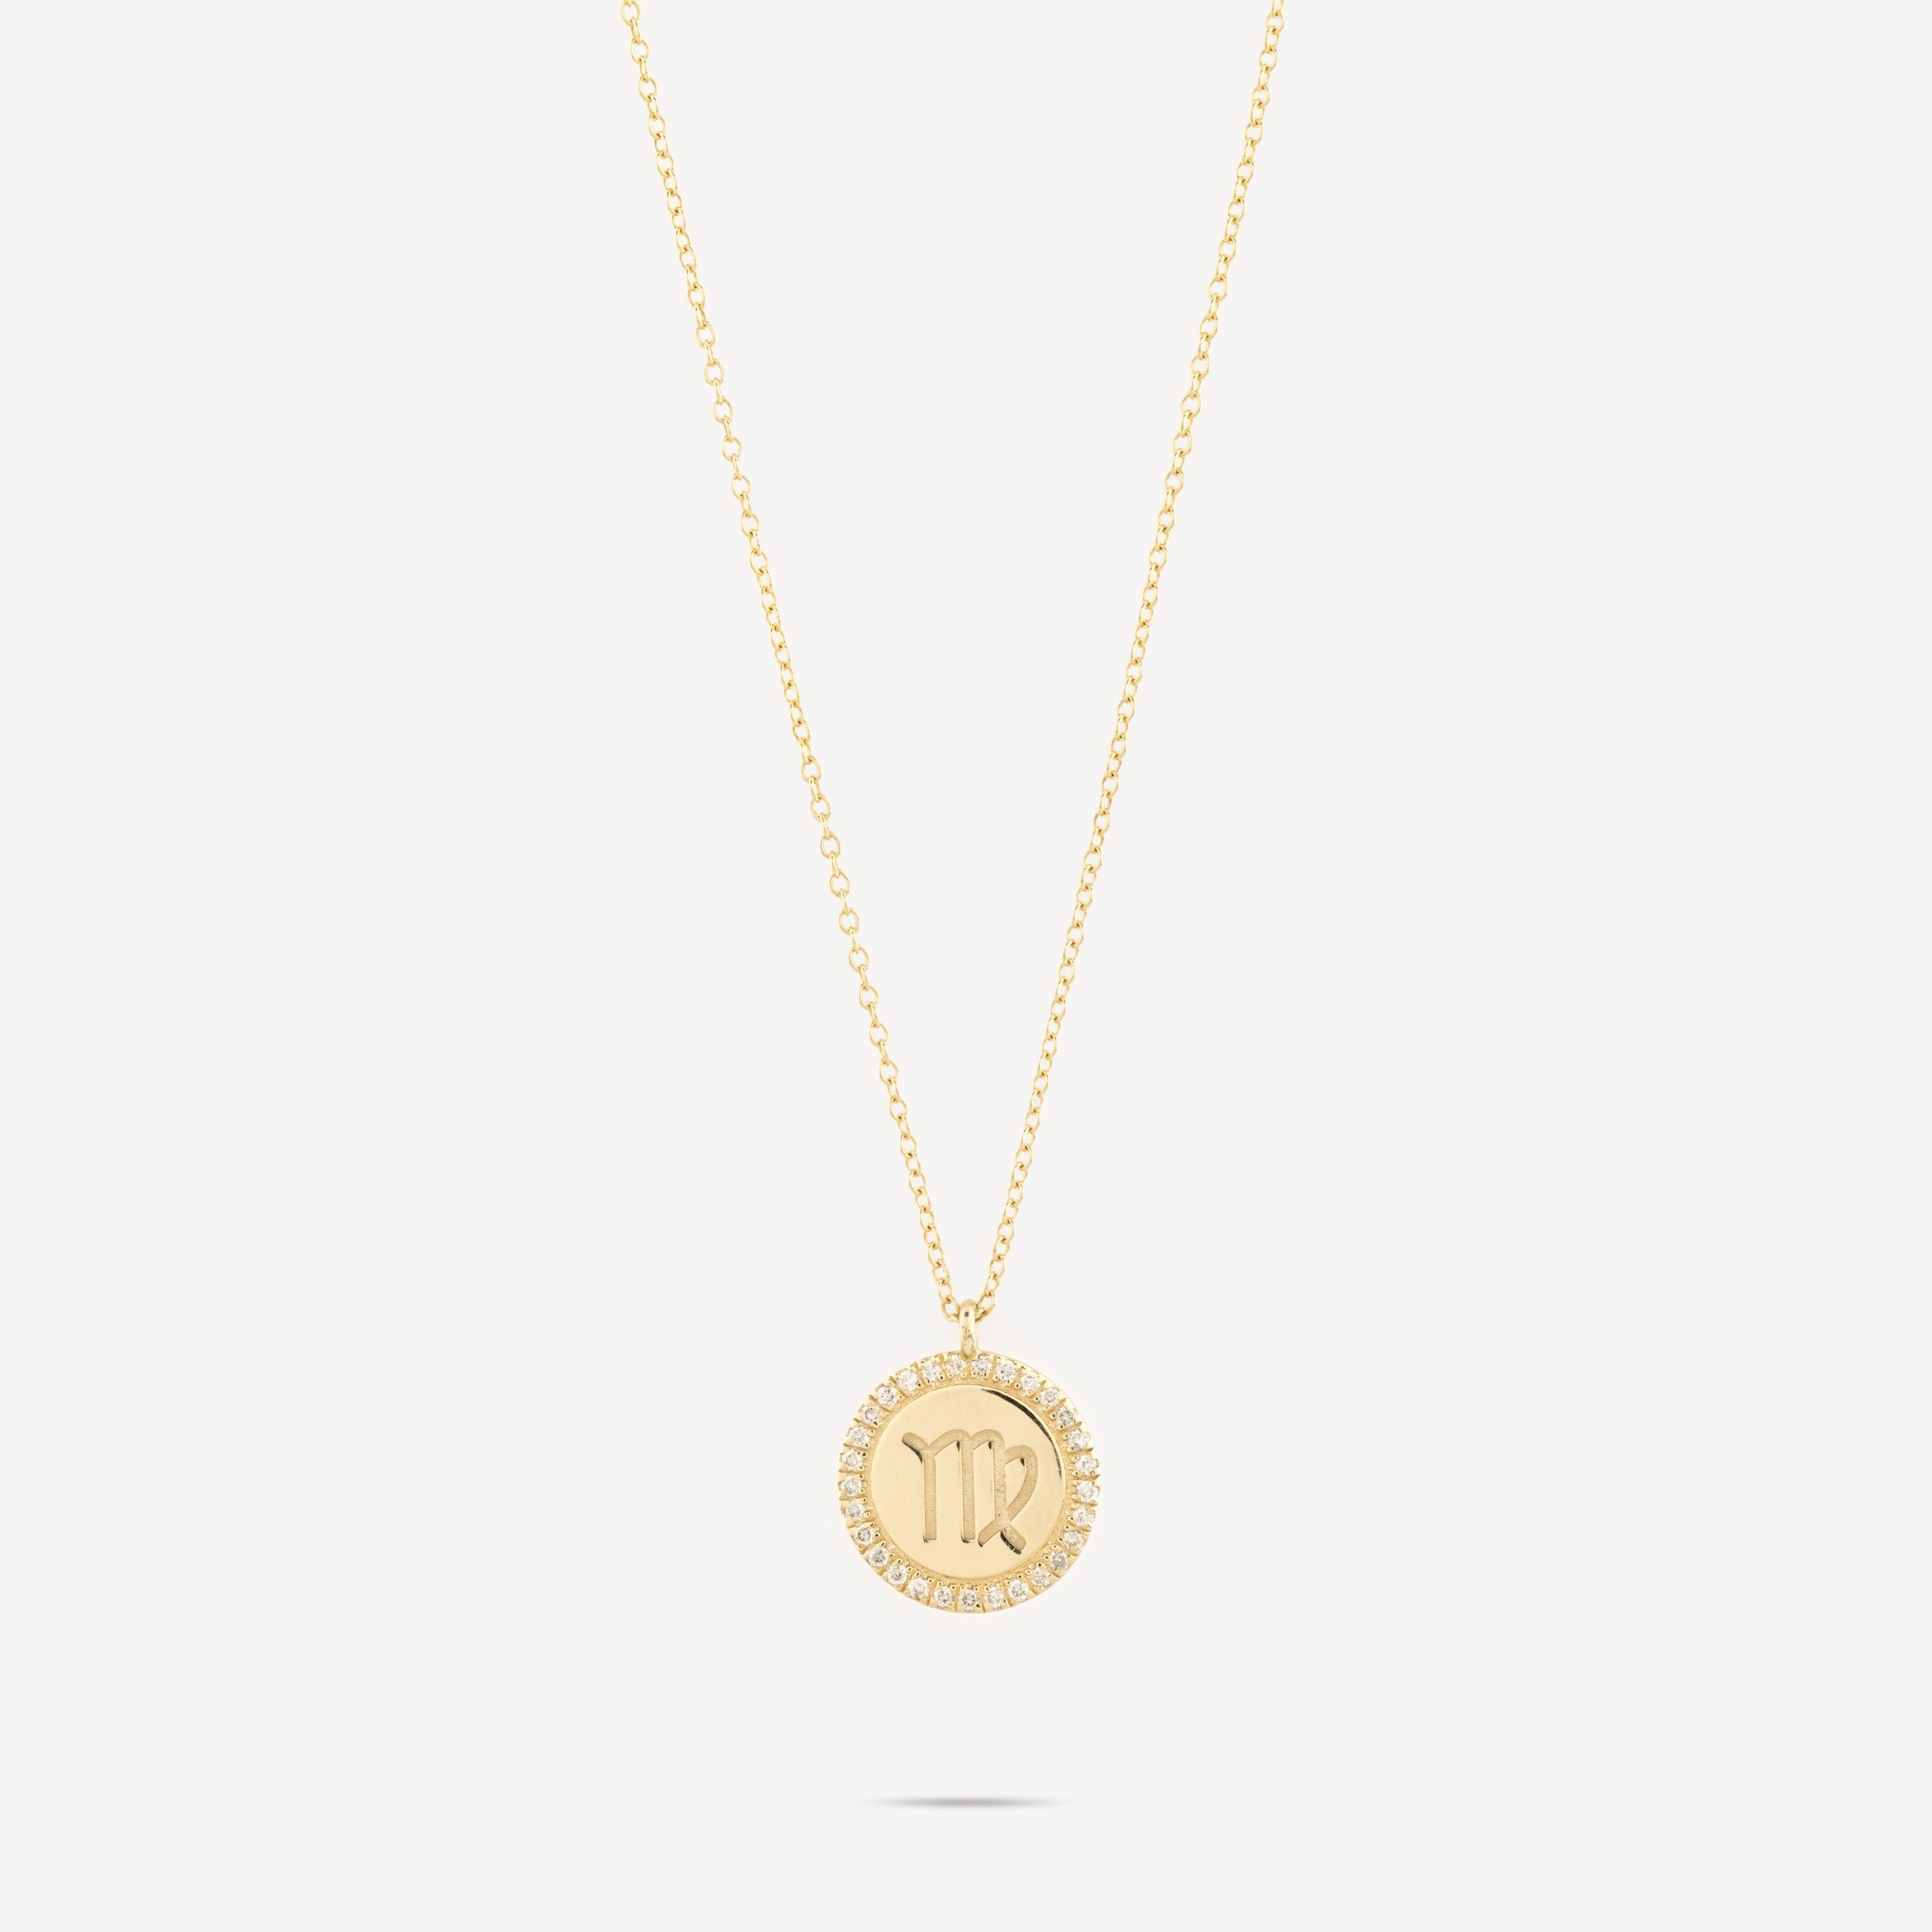 Virgo Zodiac Medal Diamond Necklace